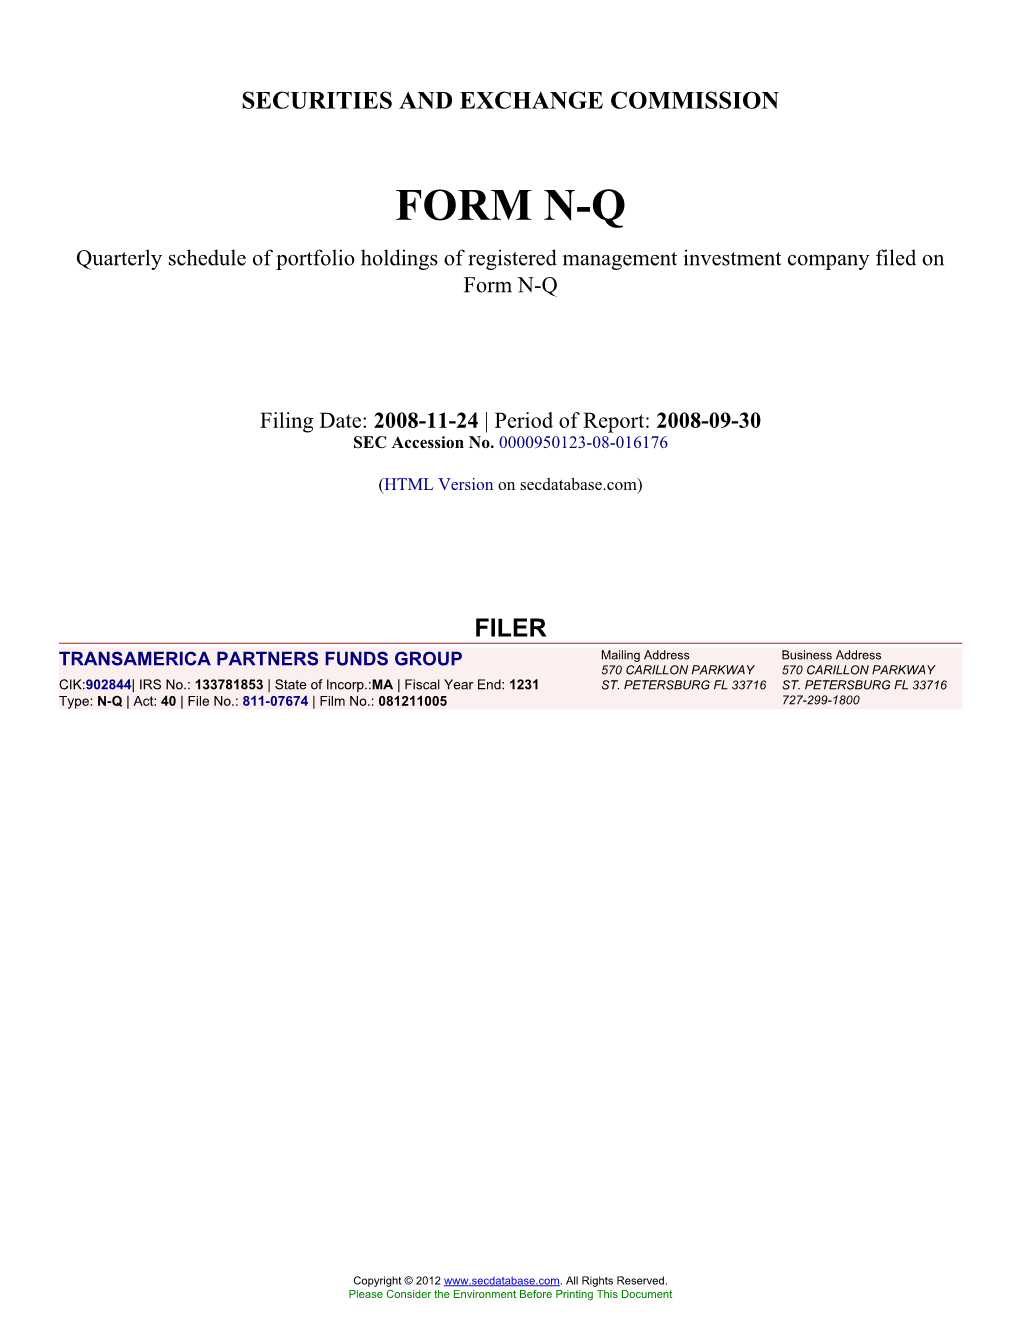 Form: NQ, Filing Date: 11/24/2008